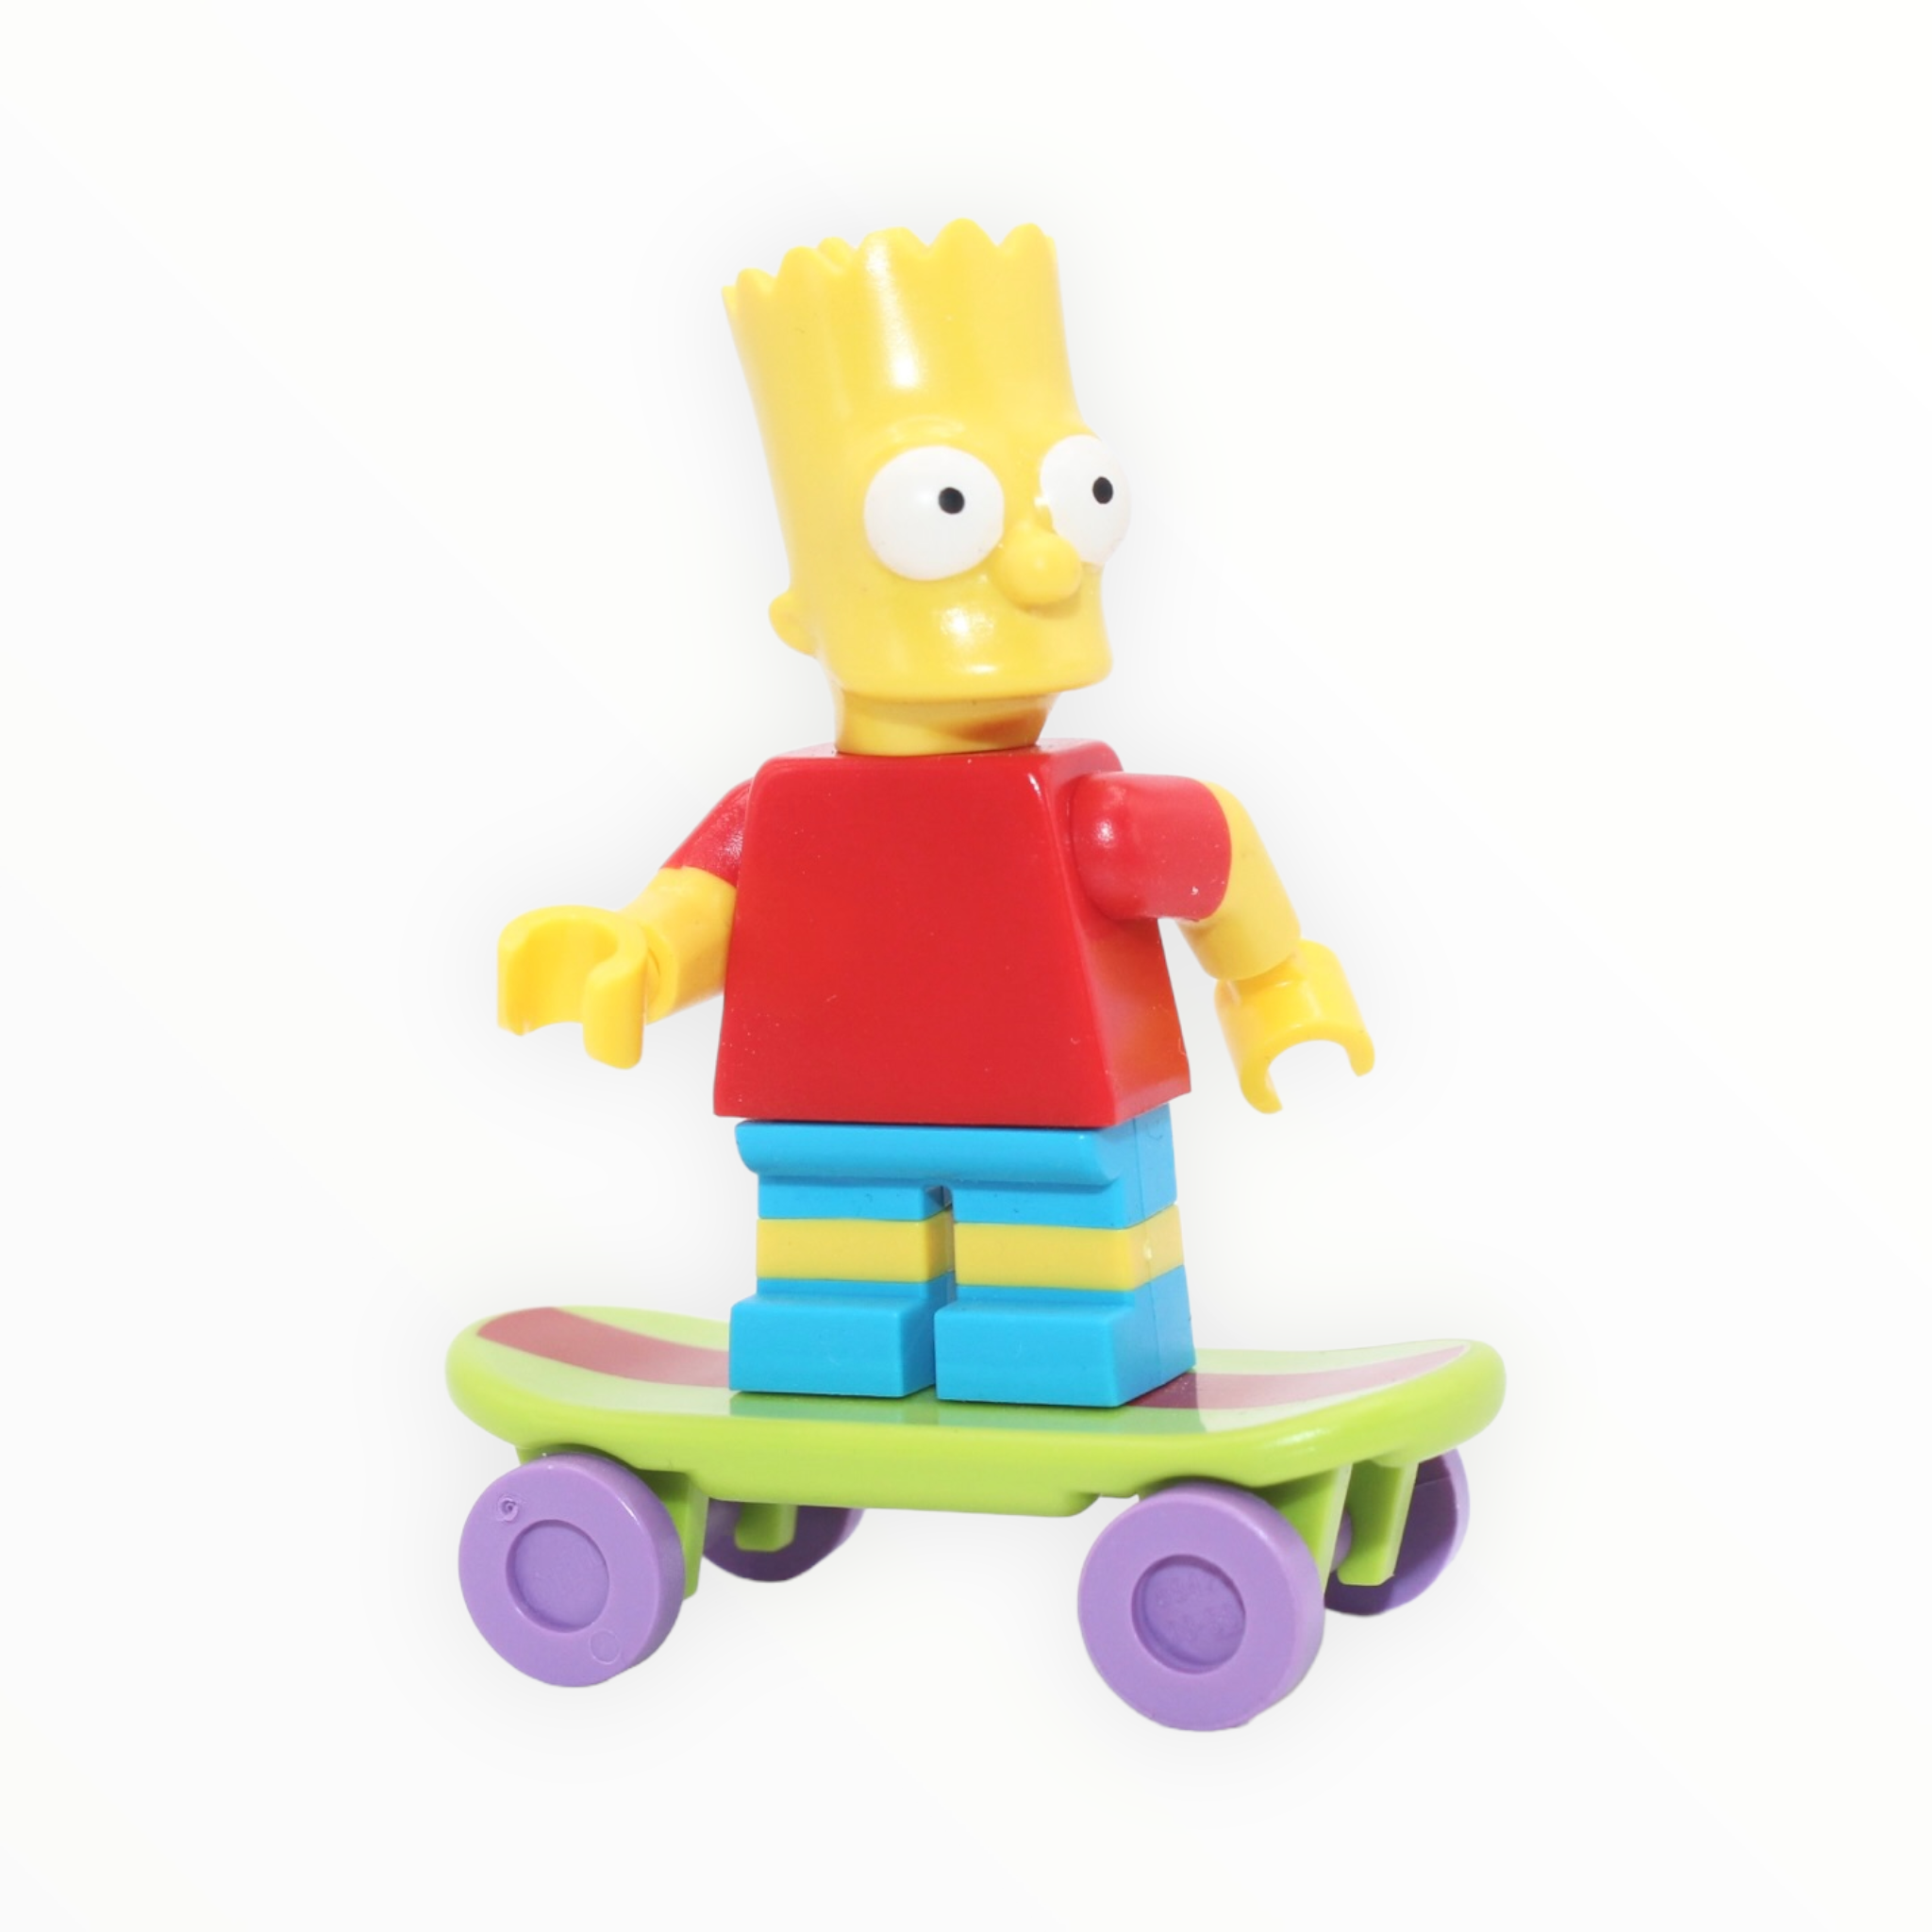 Simpsons Series: Bart Simpson